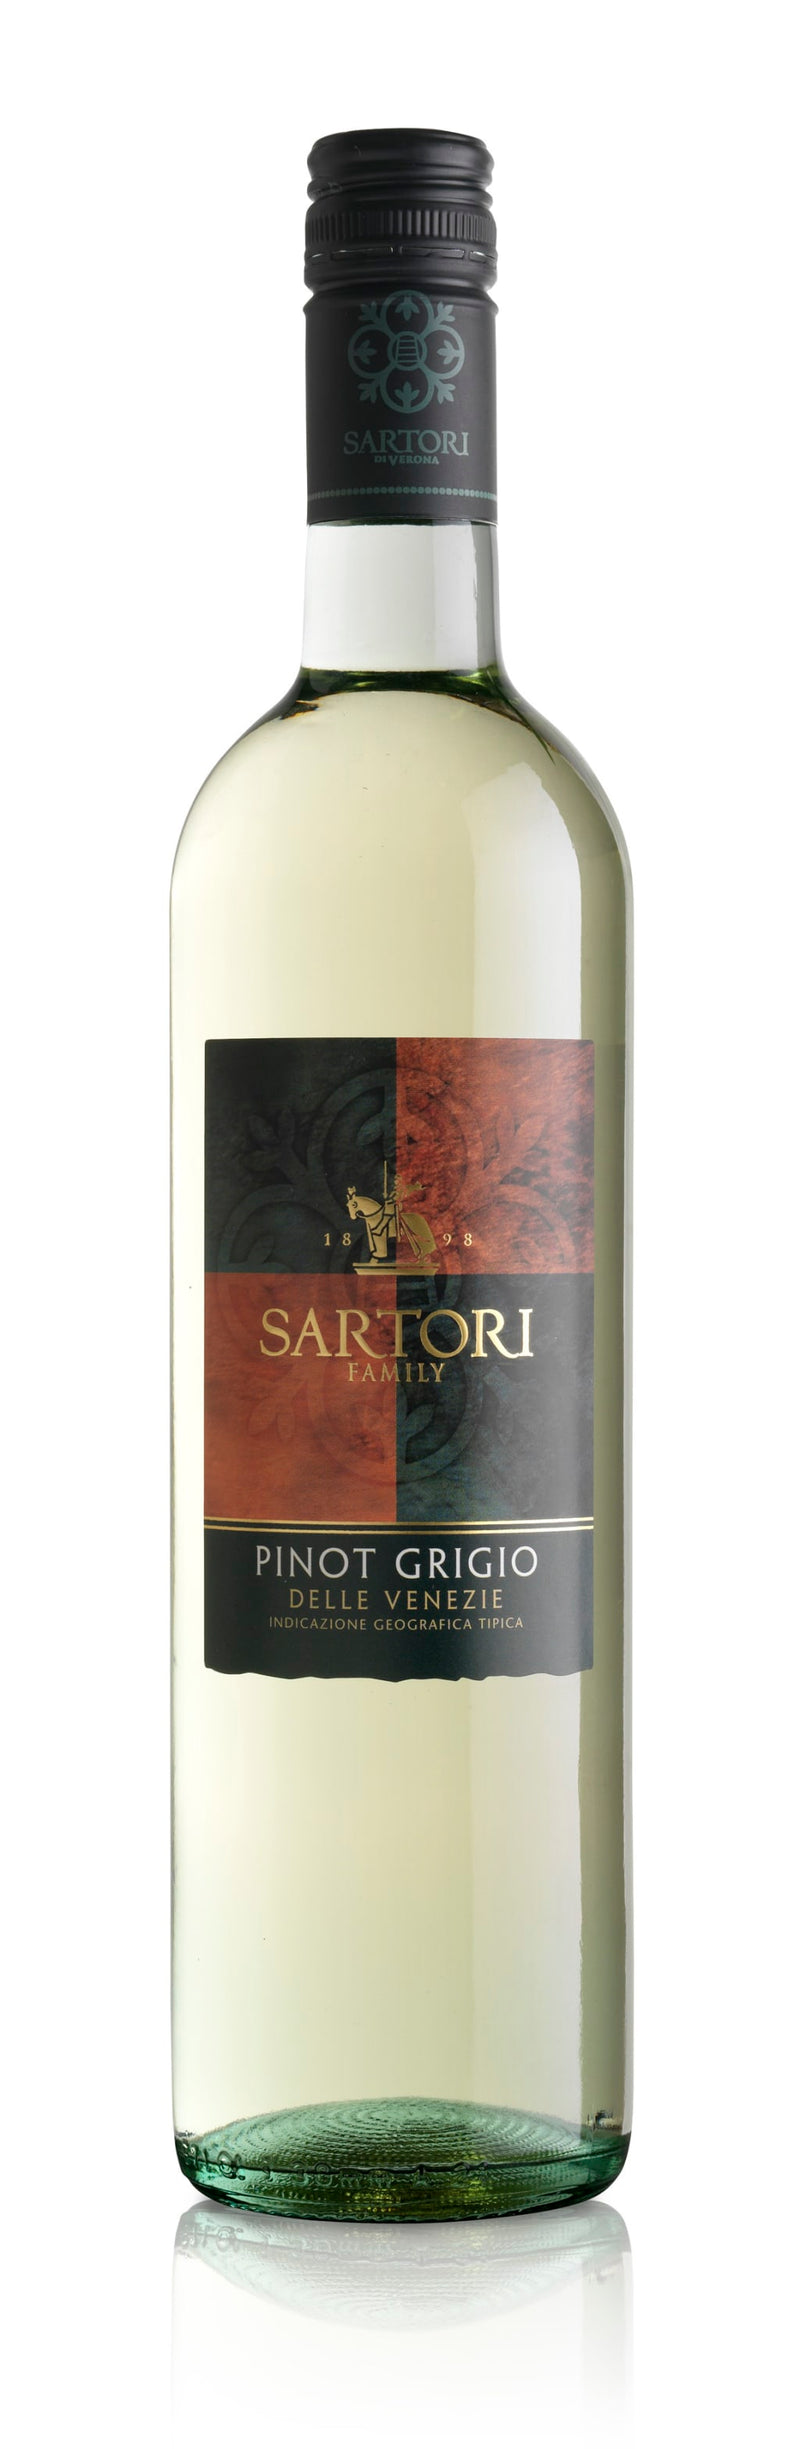 Sartori "Family" Pinot Grigio, Friuli-Venezia Giulia